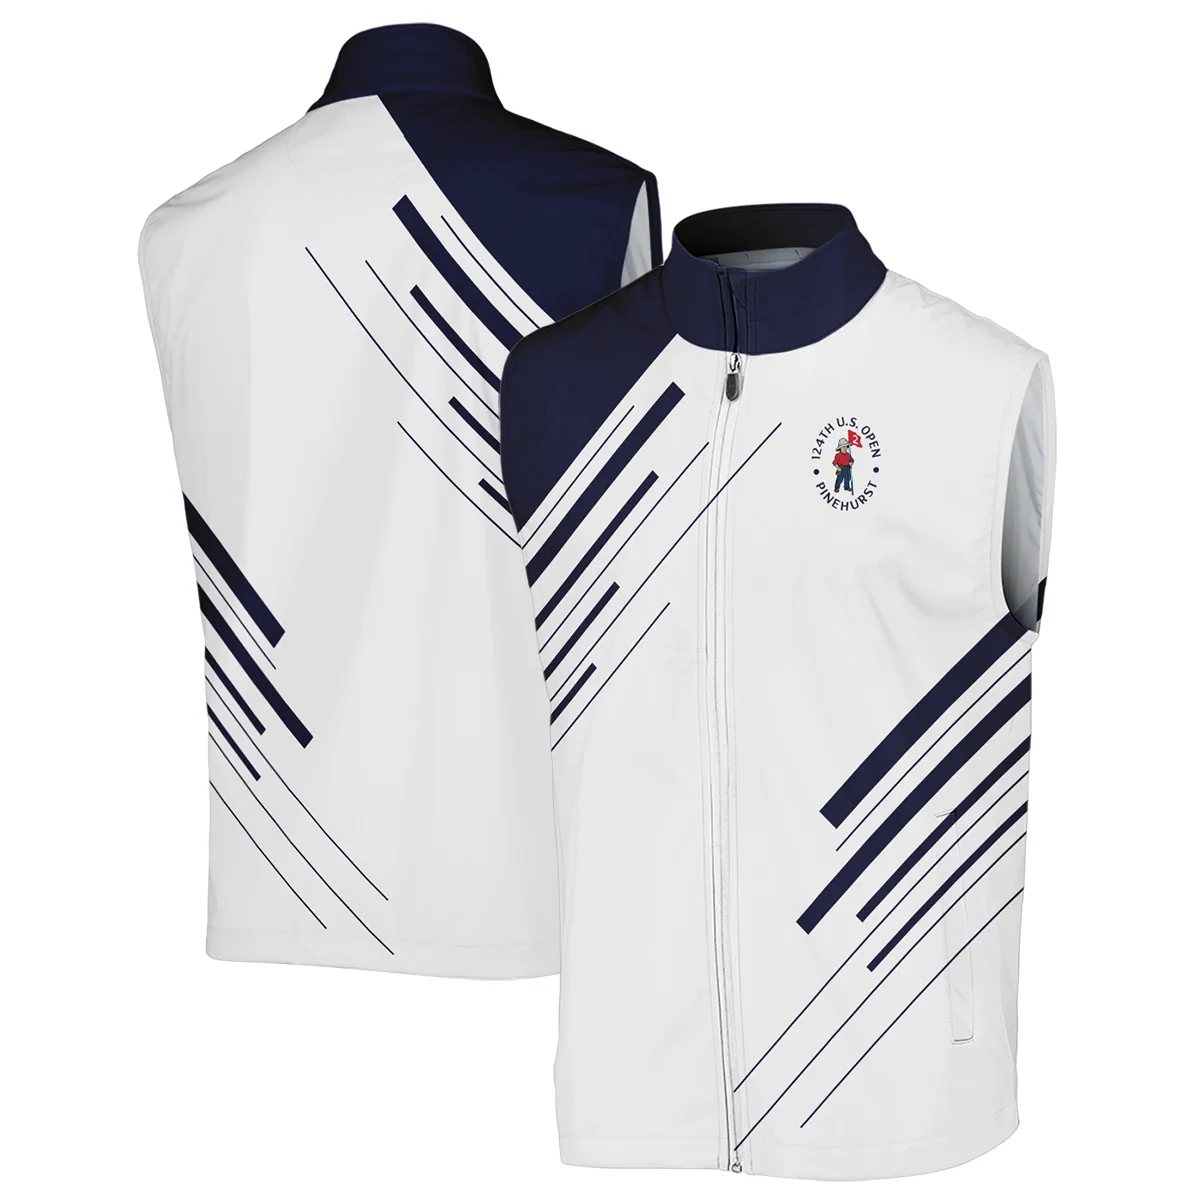 Titleist 124th U.S. Open Pinehurst Golf Unisex Sweatshirt Striped Pattern Dark Blue White All Over Print Sweatshirt